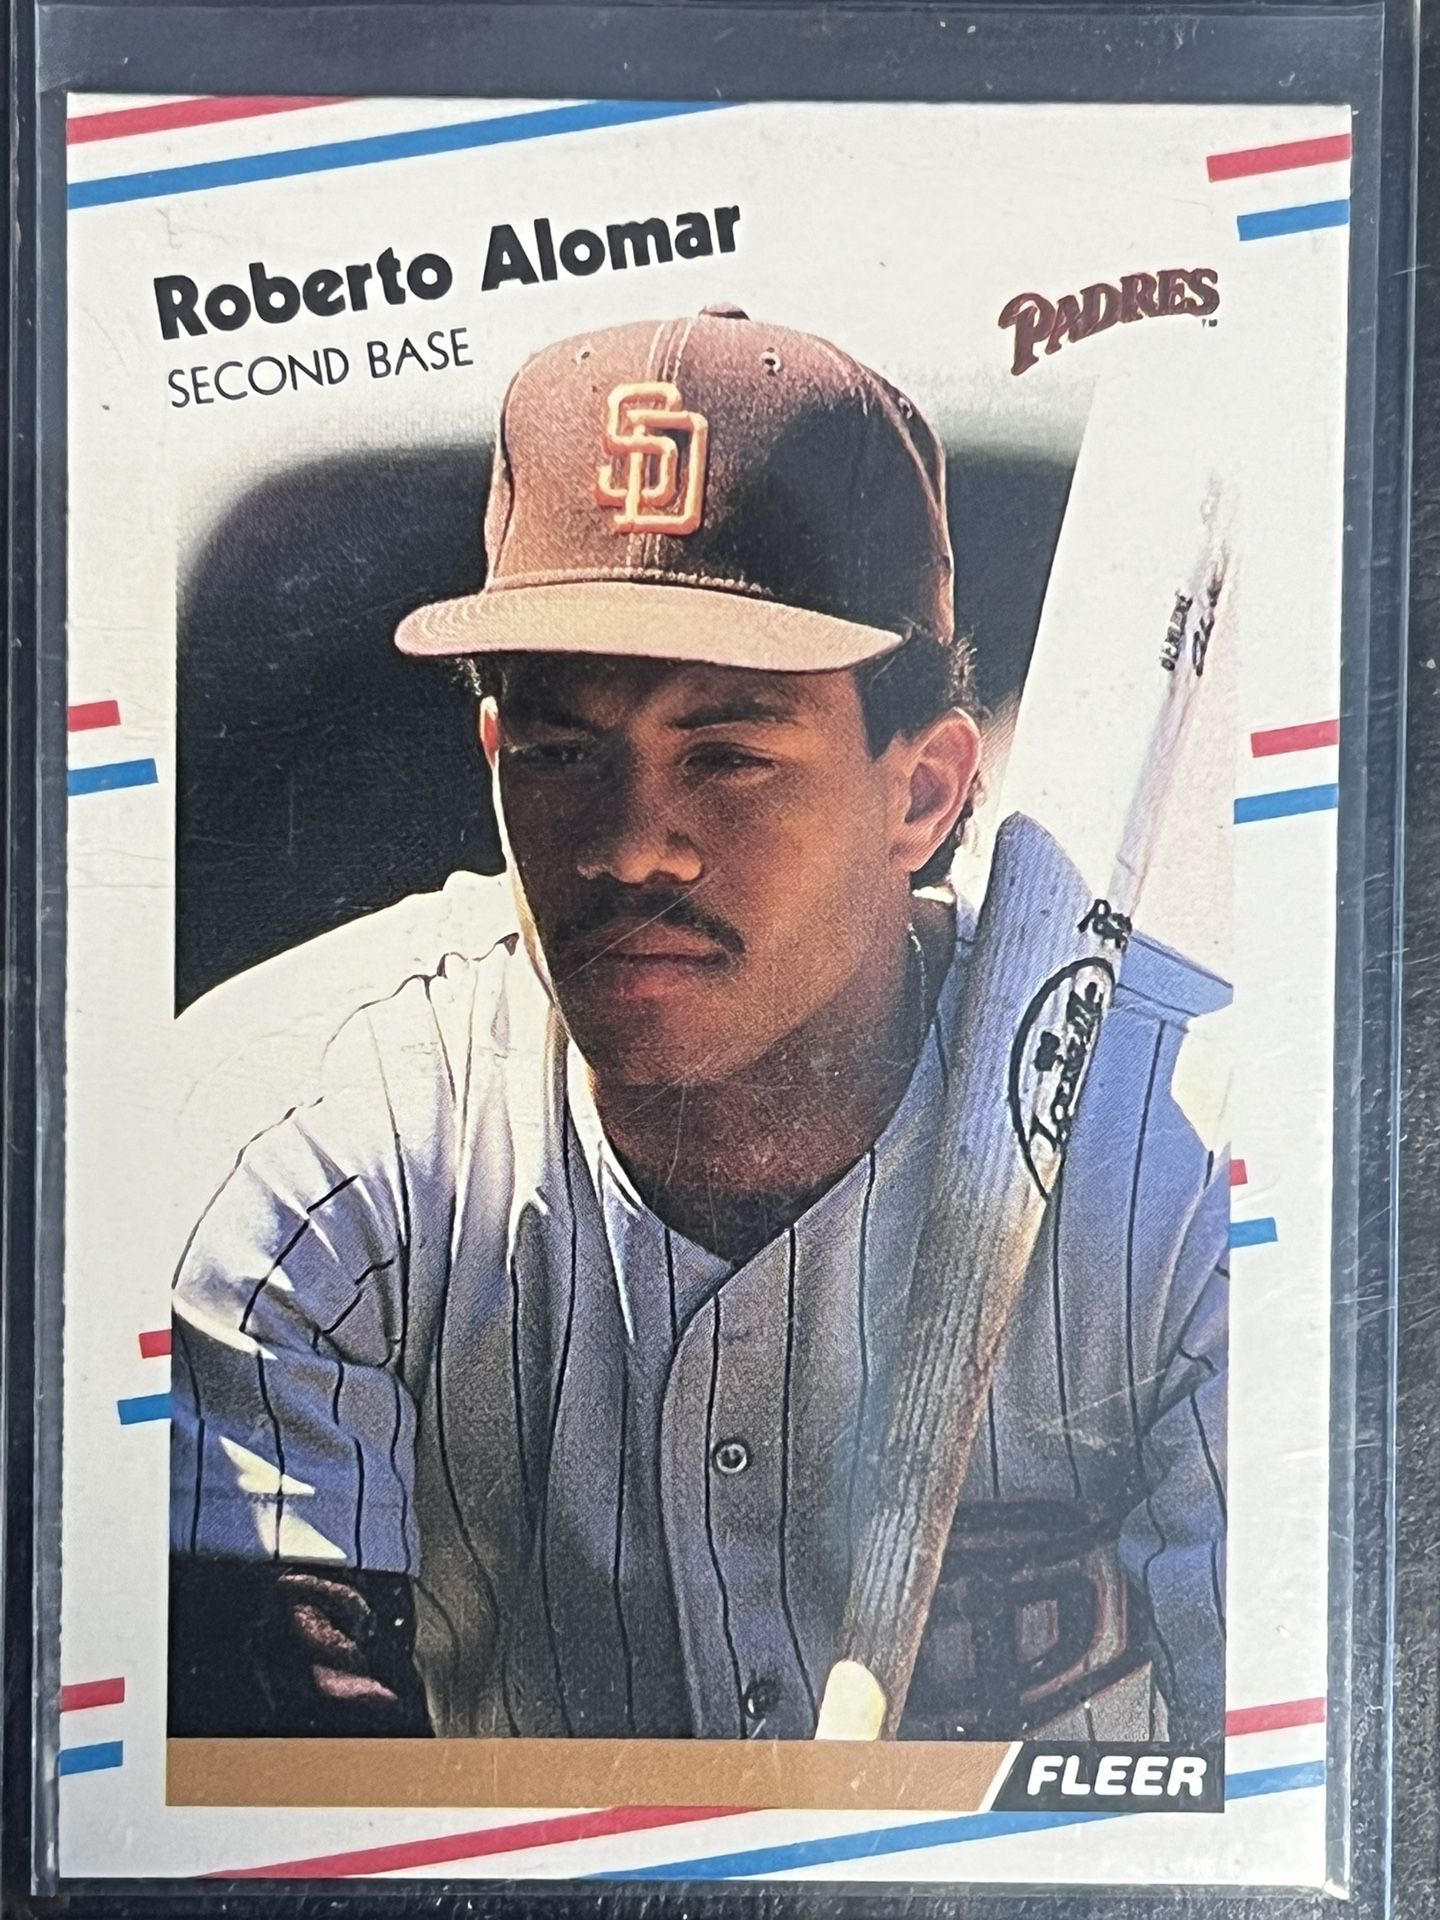 1988 Fleer Update Baseball Card Roberto Alomar Rookie